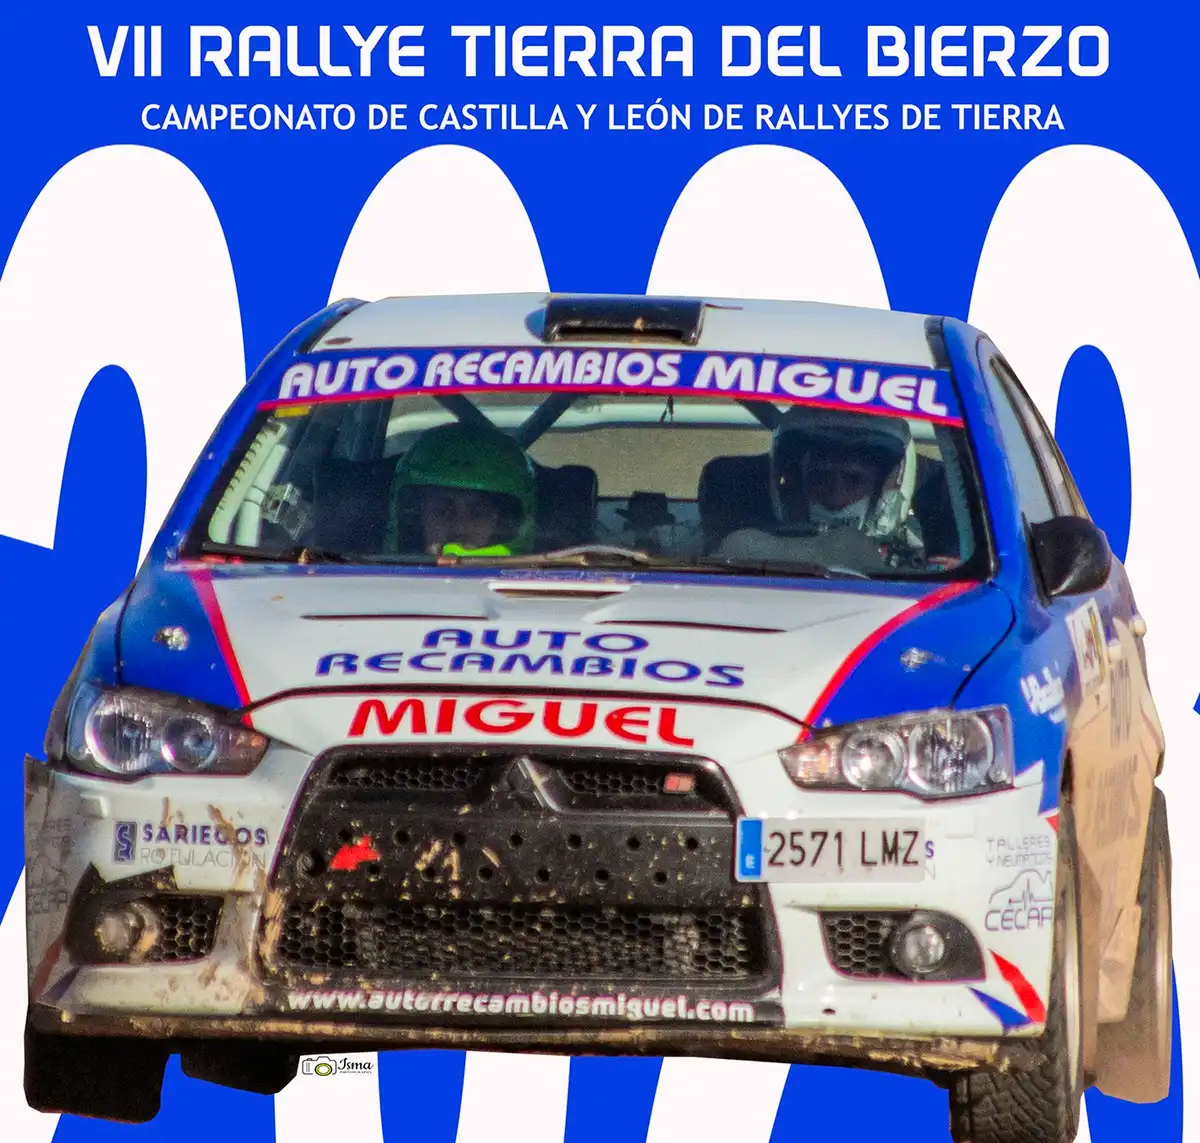 Rallye Tierra del Bierzo 2023